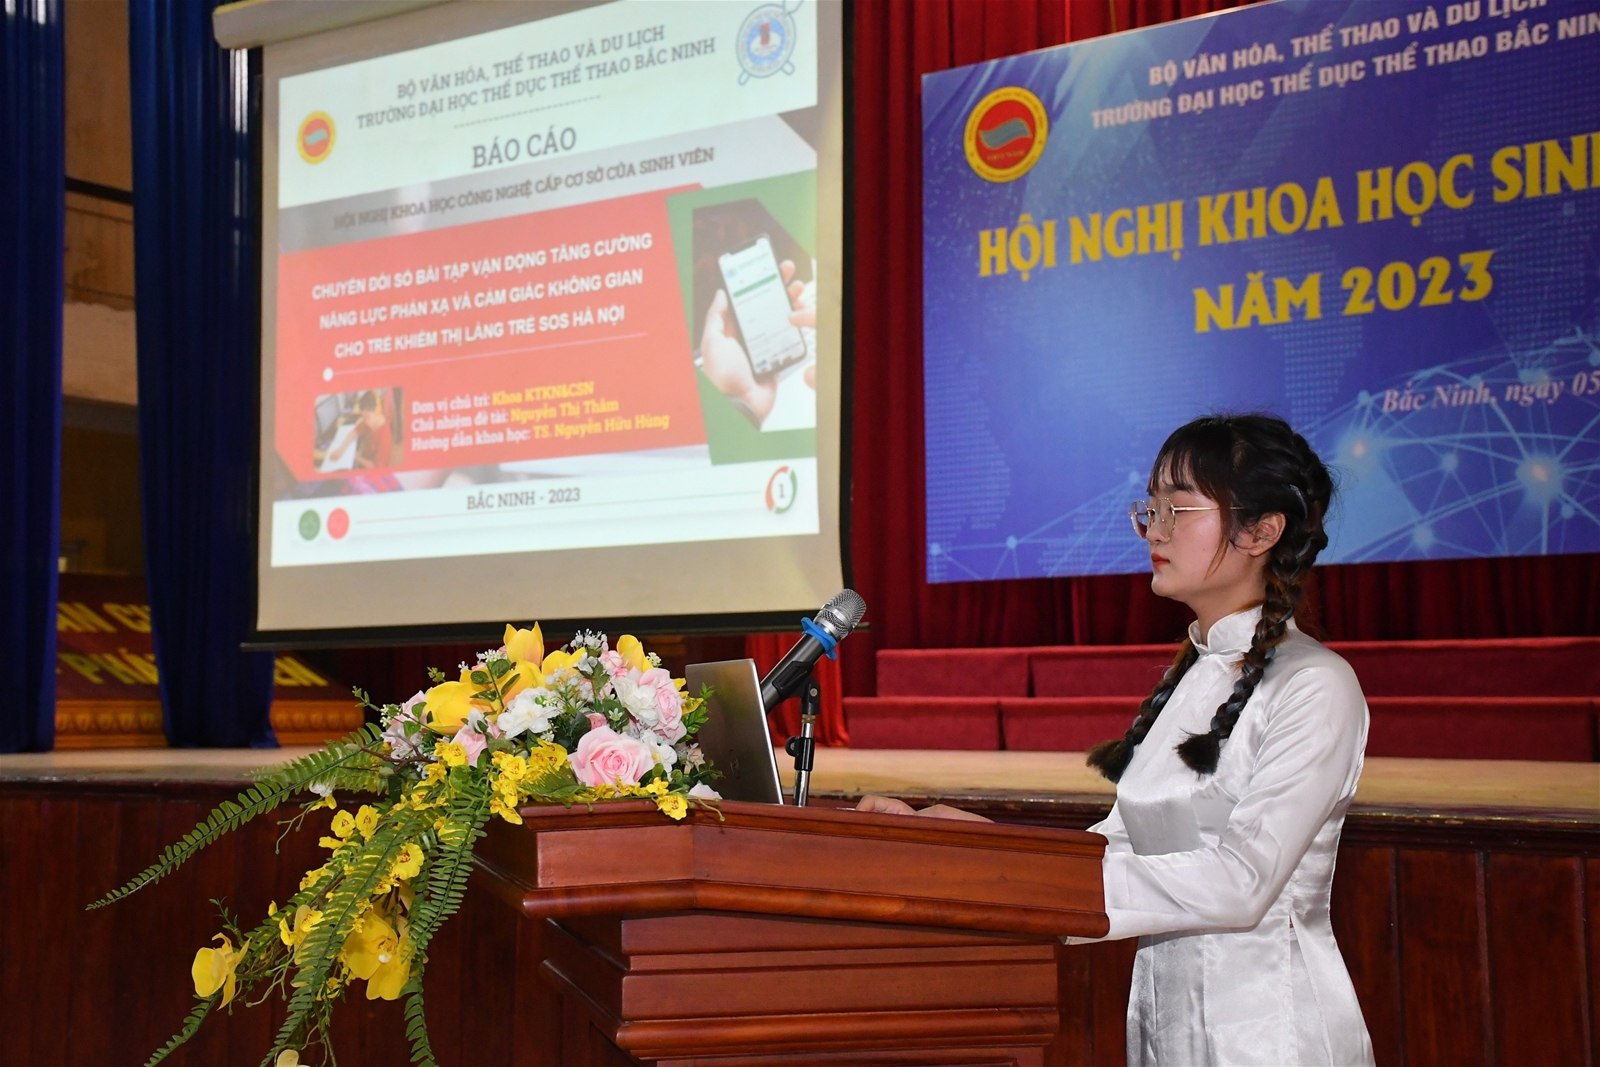 Trường Đại học TDTT Bắc Ninh tổ chức thành công Hội nghị khoa học Sinh viên năm 2023